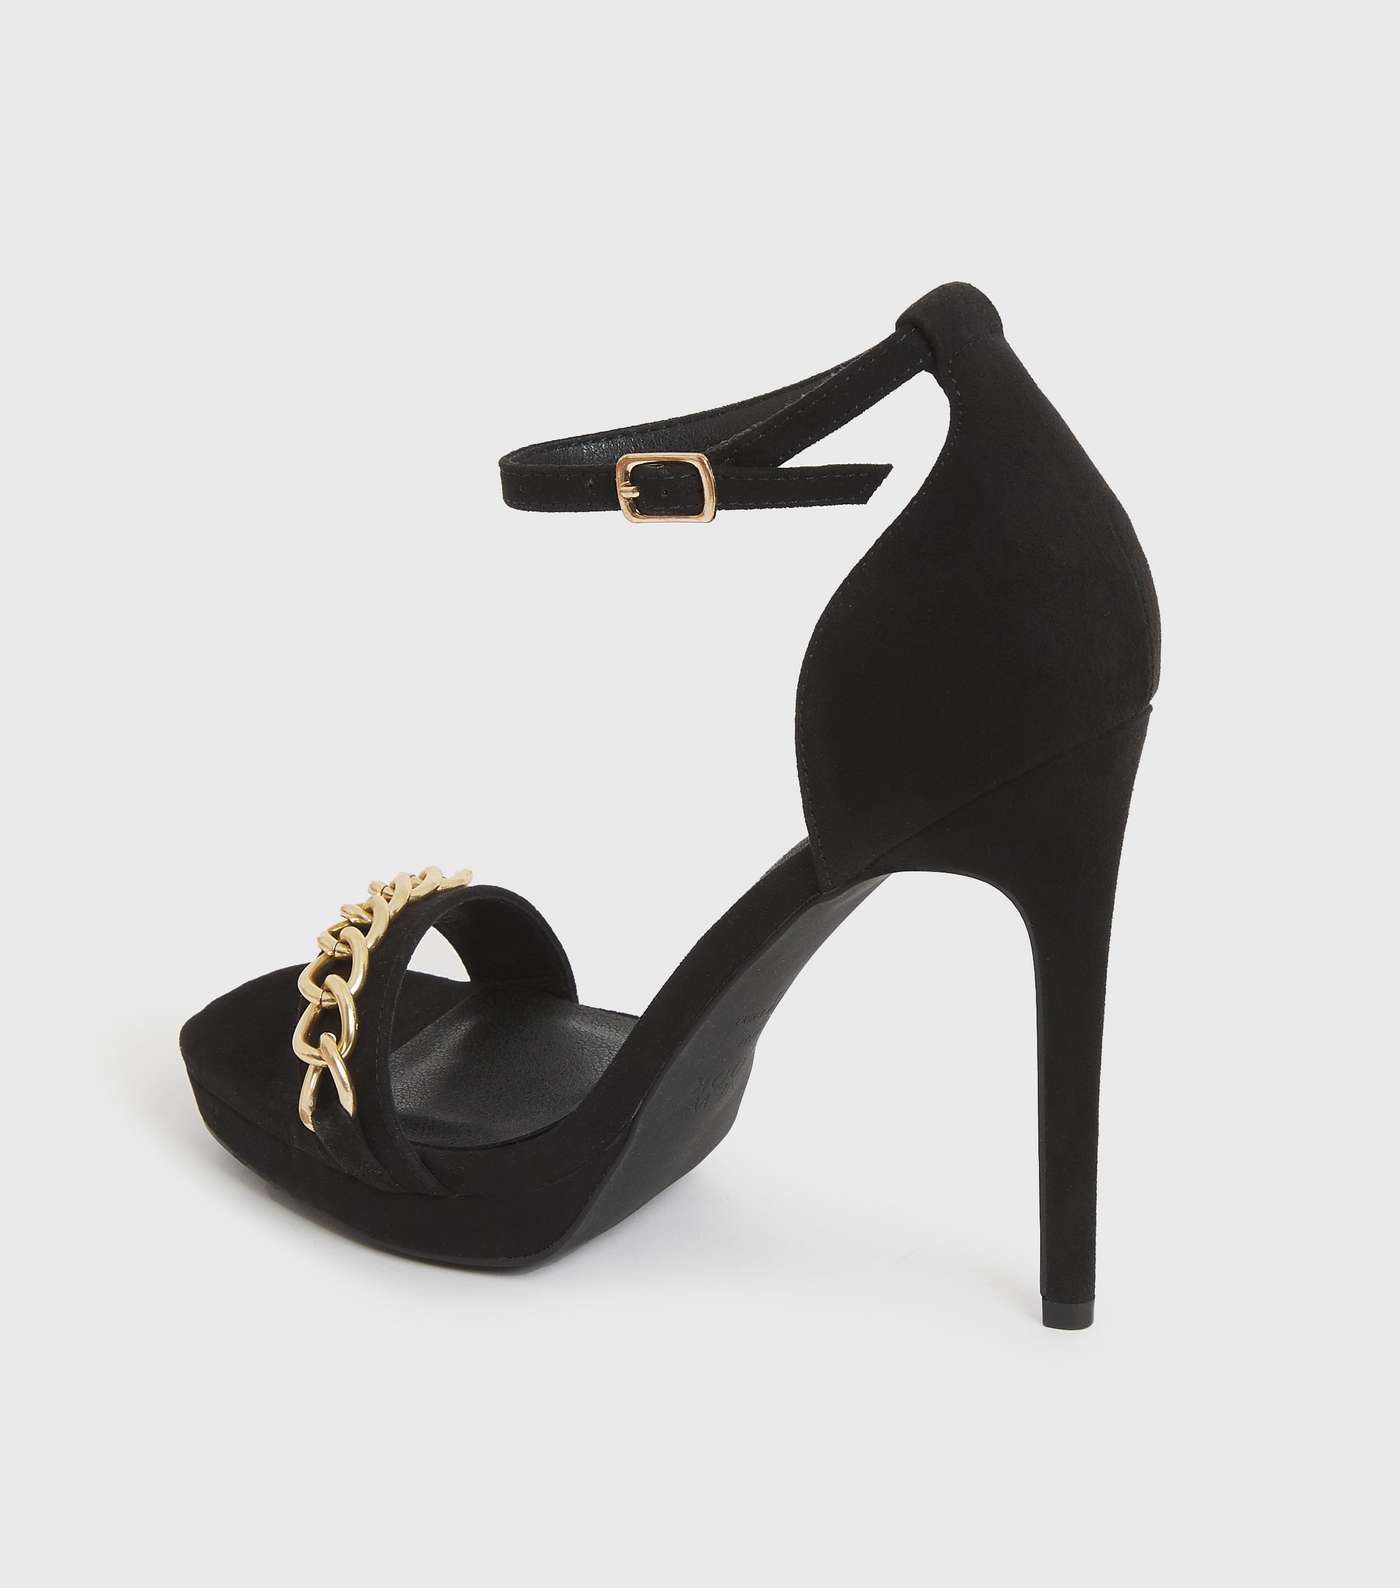 Black Suedette Chain Stiletto Heel Platform Sandals Image 4